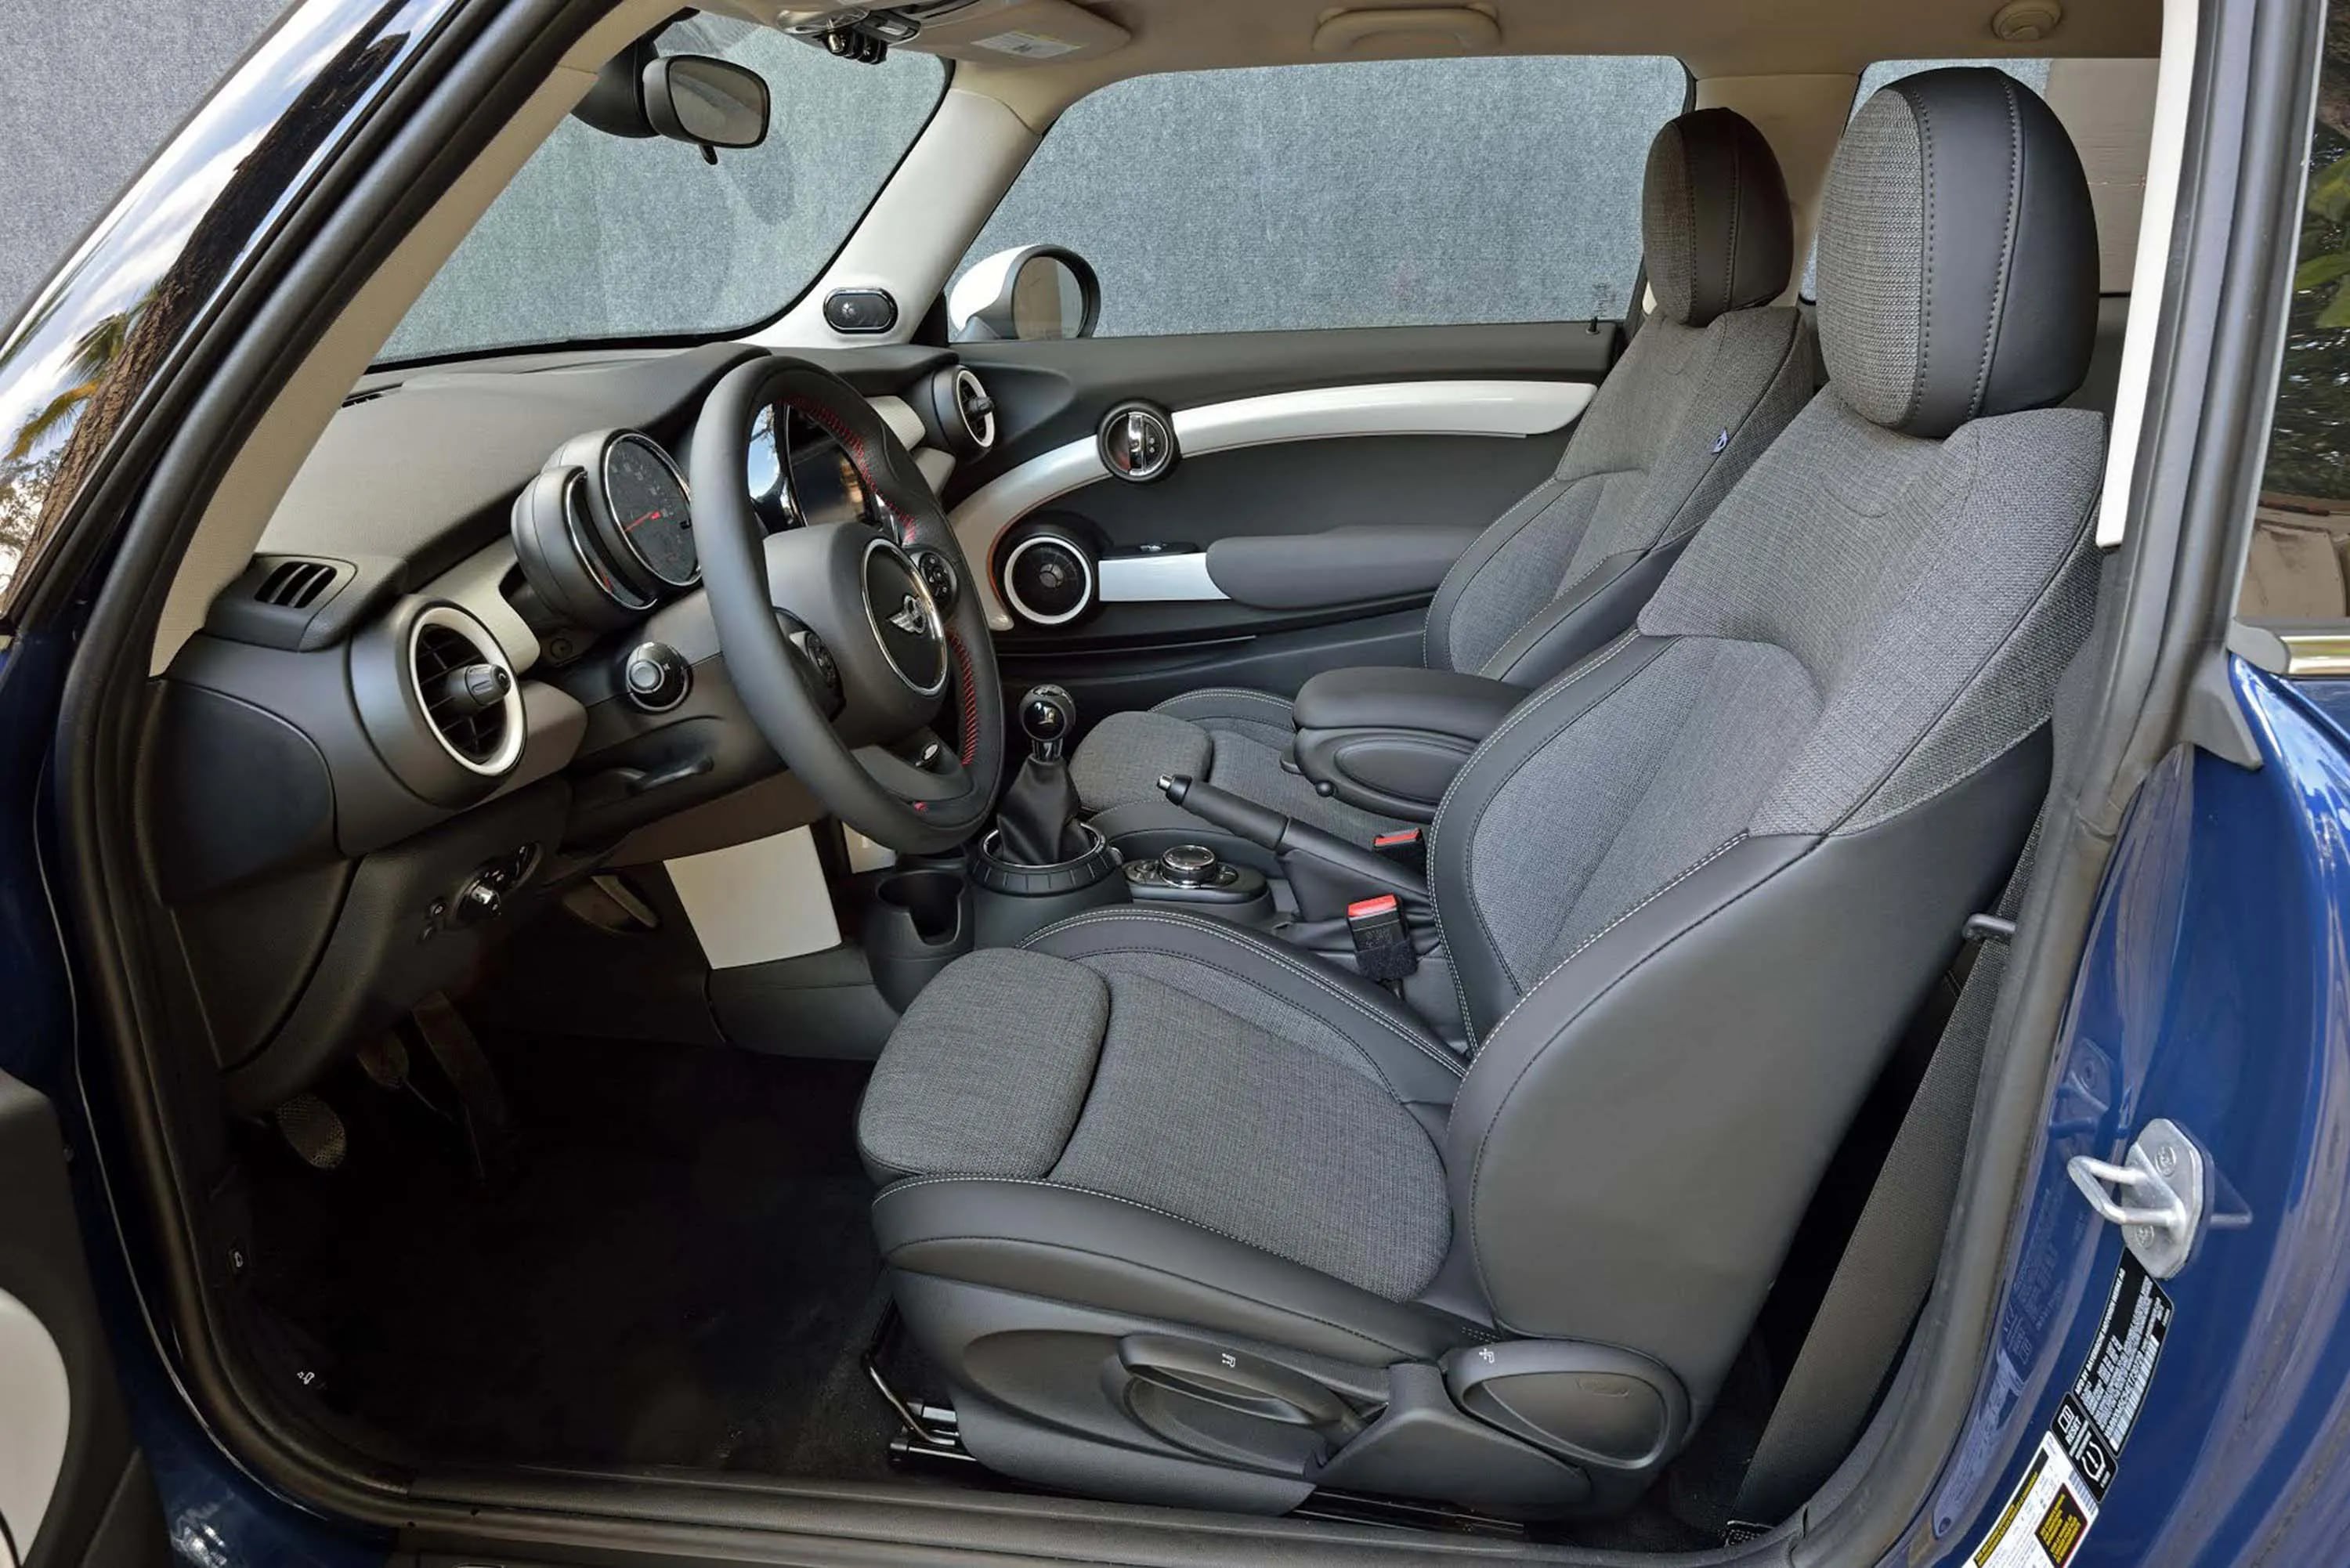 Car Clock bmw mini cooper interior Auto Accessories Dashboard